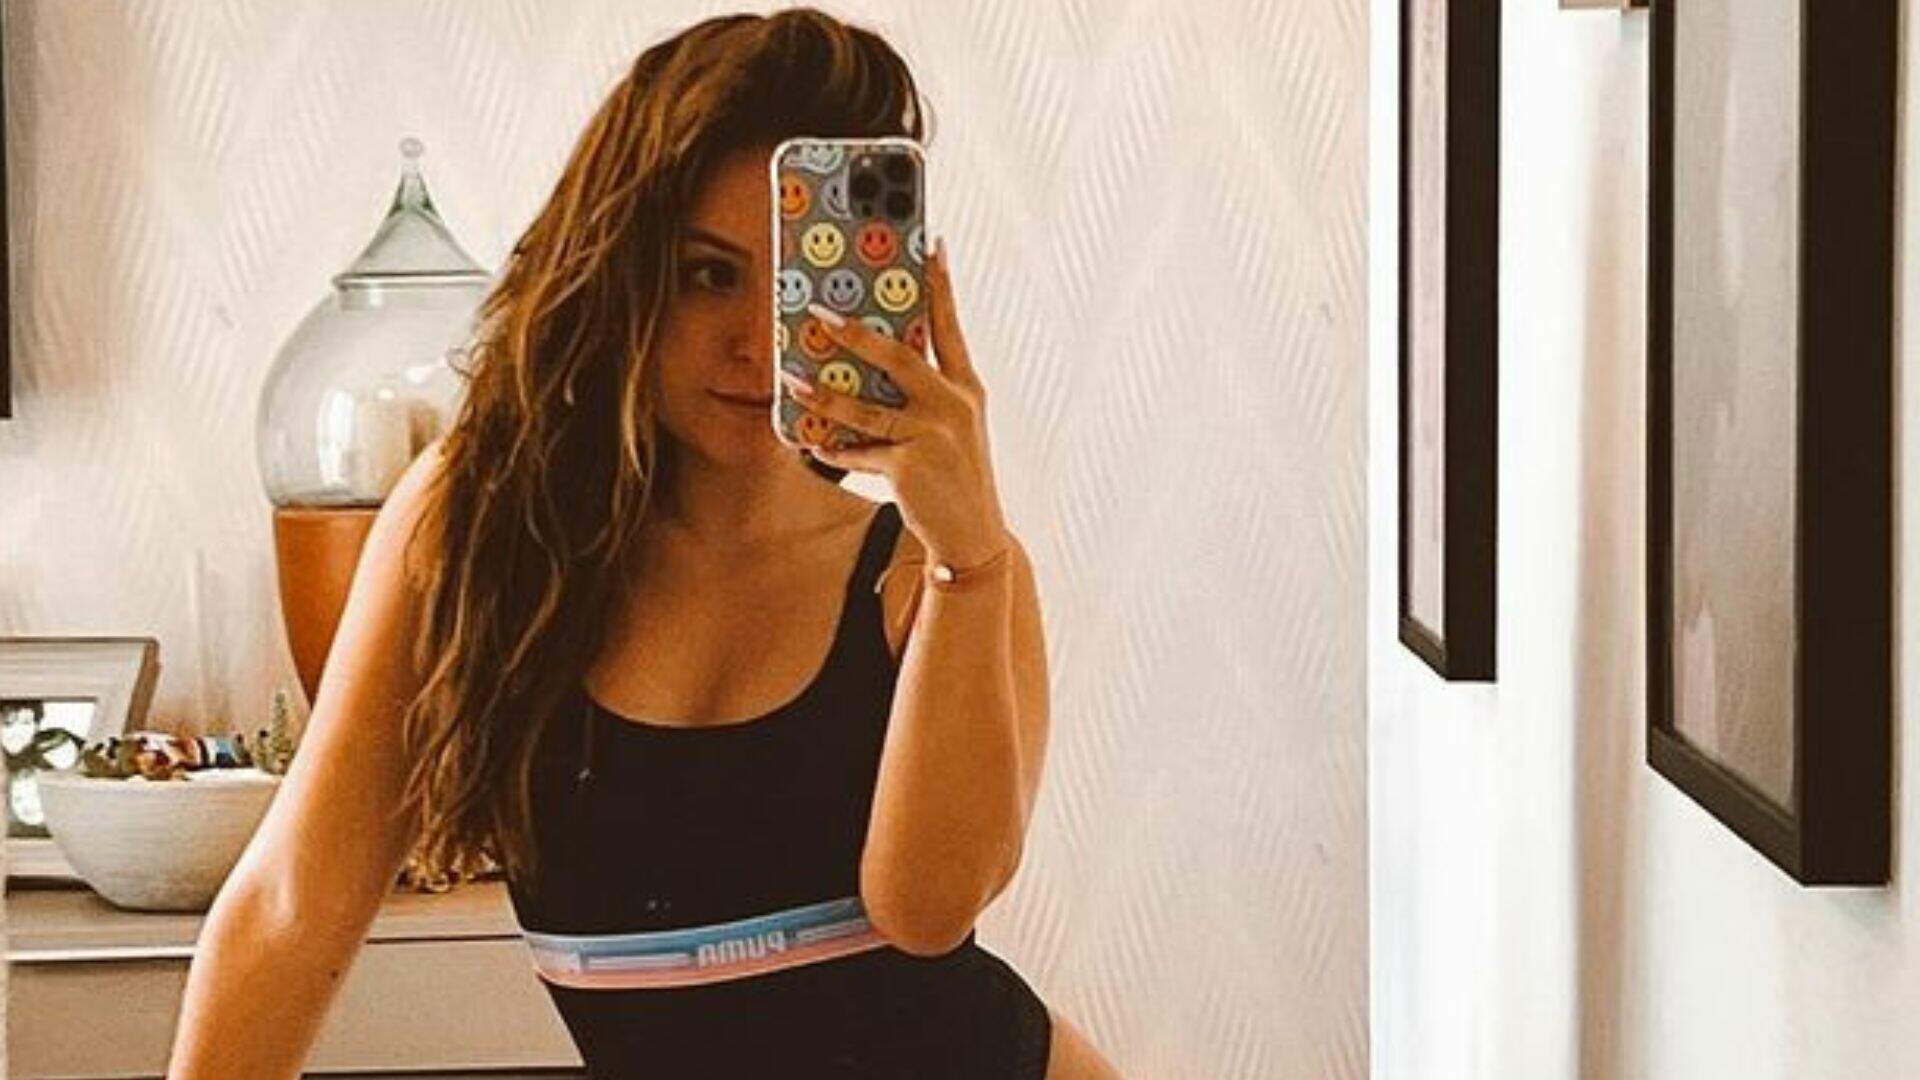 Larissa Manoela tira foto com maiô PP no quarto e corpo é comparado ao de Geisy Arruda: “Cresceu” - Metropolitana FM